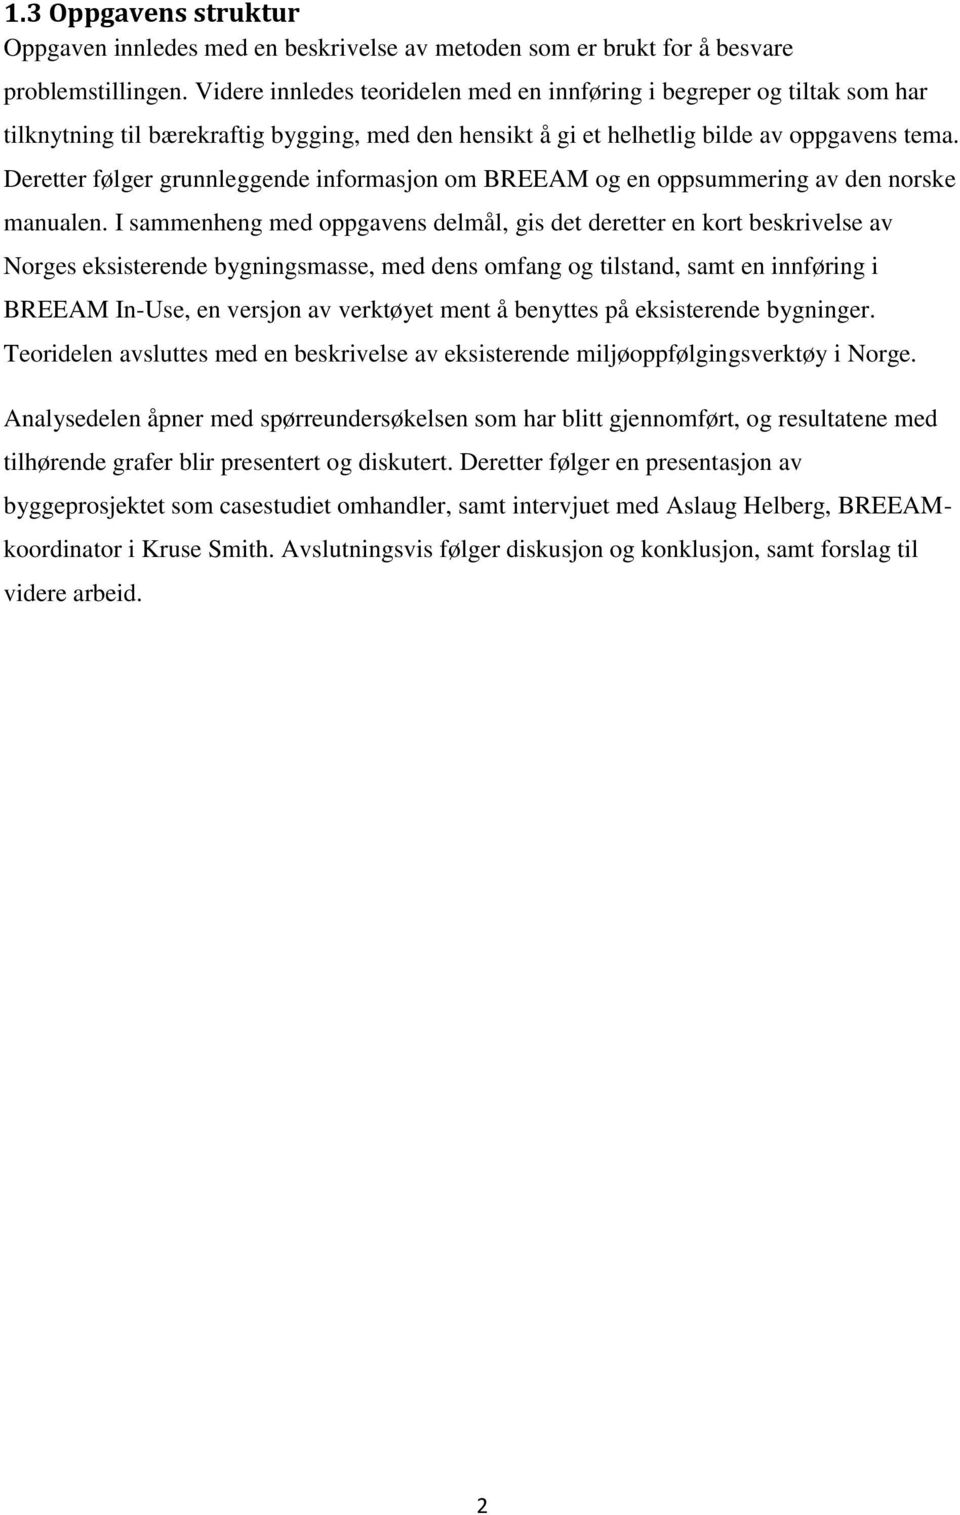 Deretter følger grunnleggende informasjon om BREEAM og en oppsummering av den norske manualen.